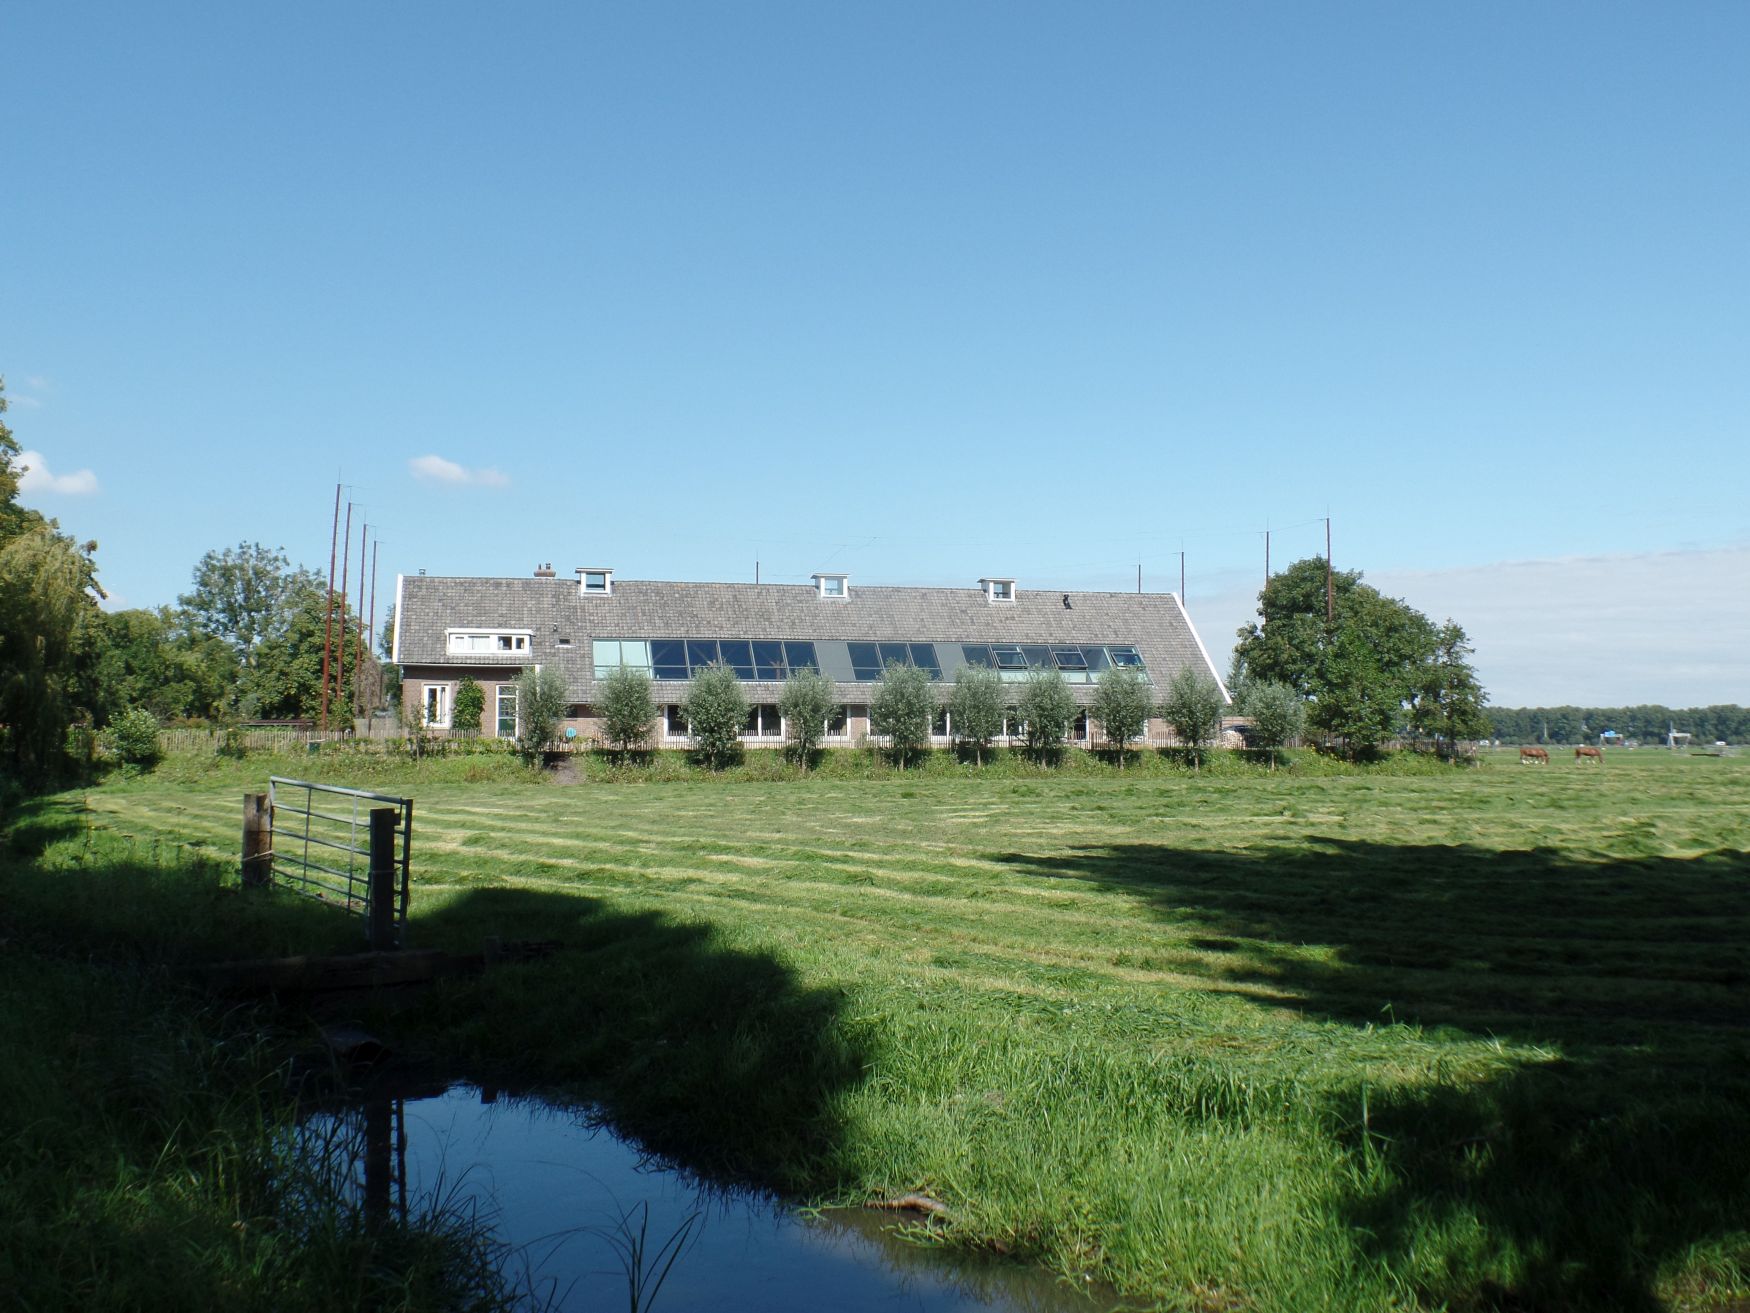 Woning in een voormalige munitieopslag - Ouderkerk aan de Amstel | Project Spatie Architectuur & Interieur